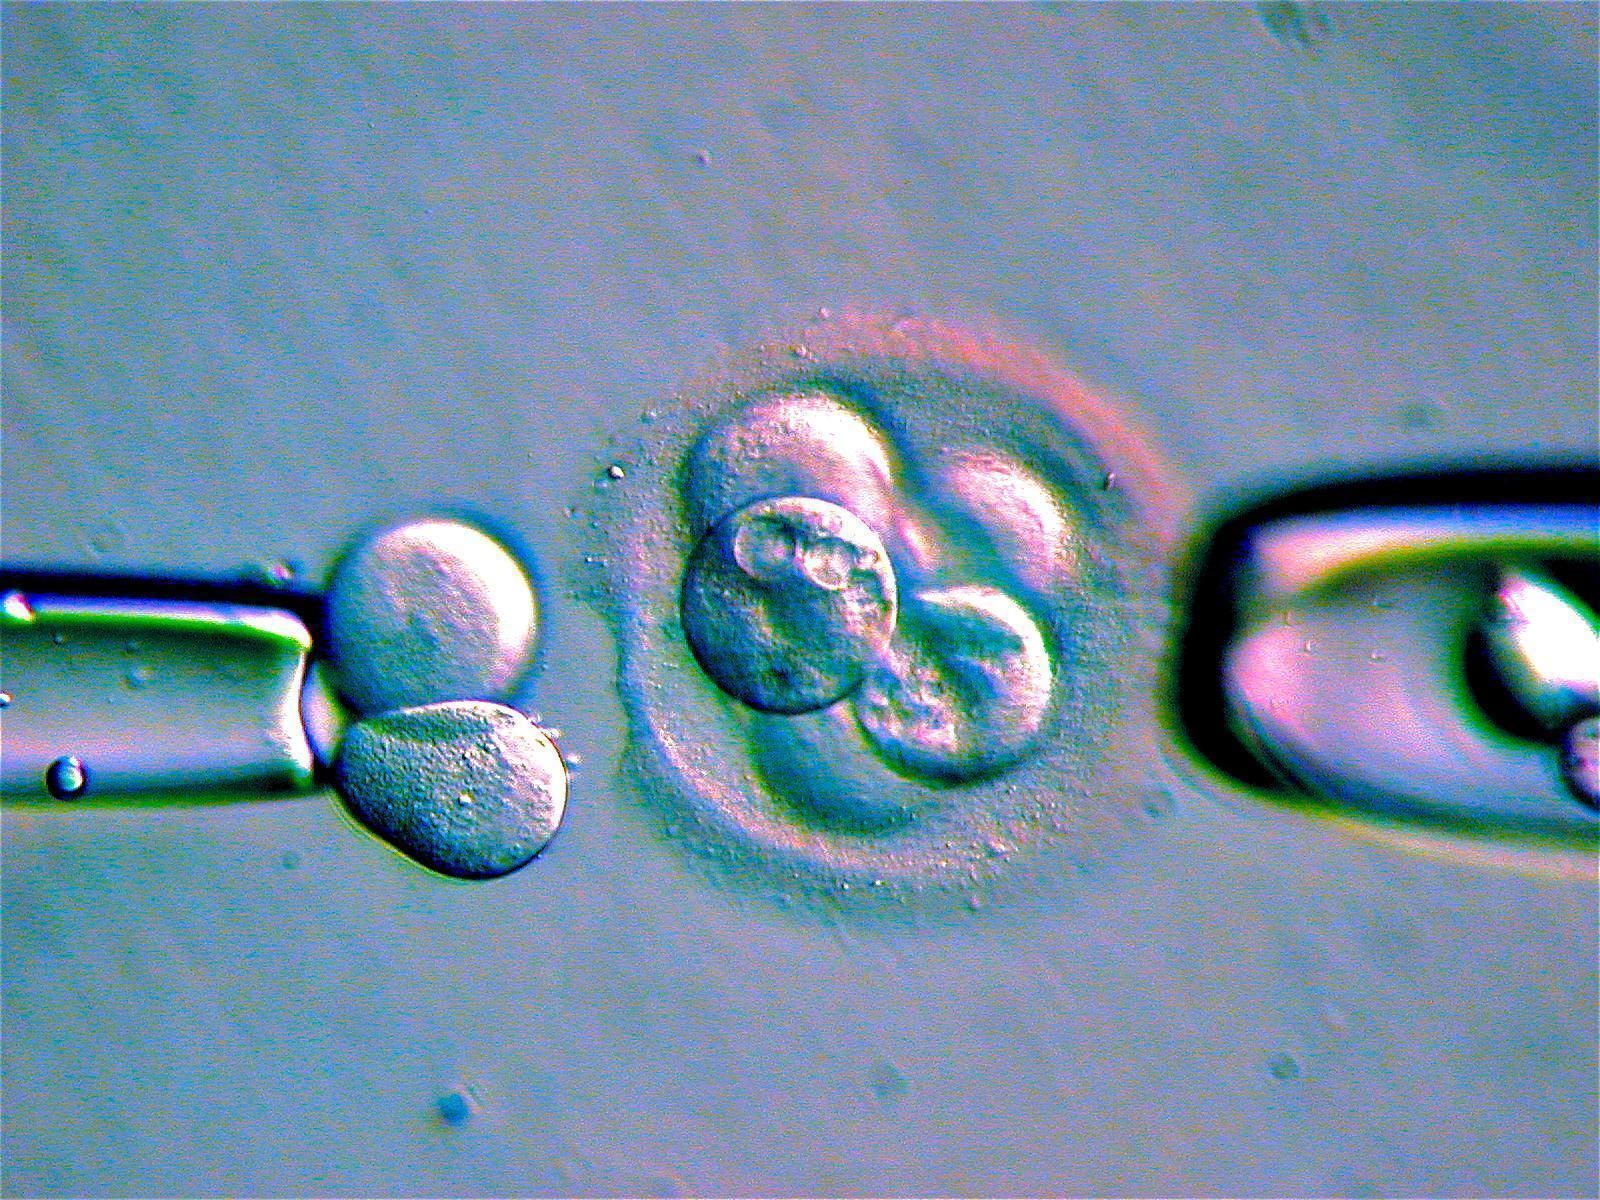 細胞分裂を繰り返す受精卵から細胞を搾取し、その染色体や遺伝子を分析する技術は夢ではなく確立された技術だ。